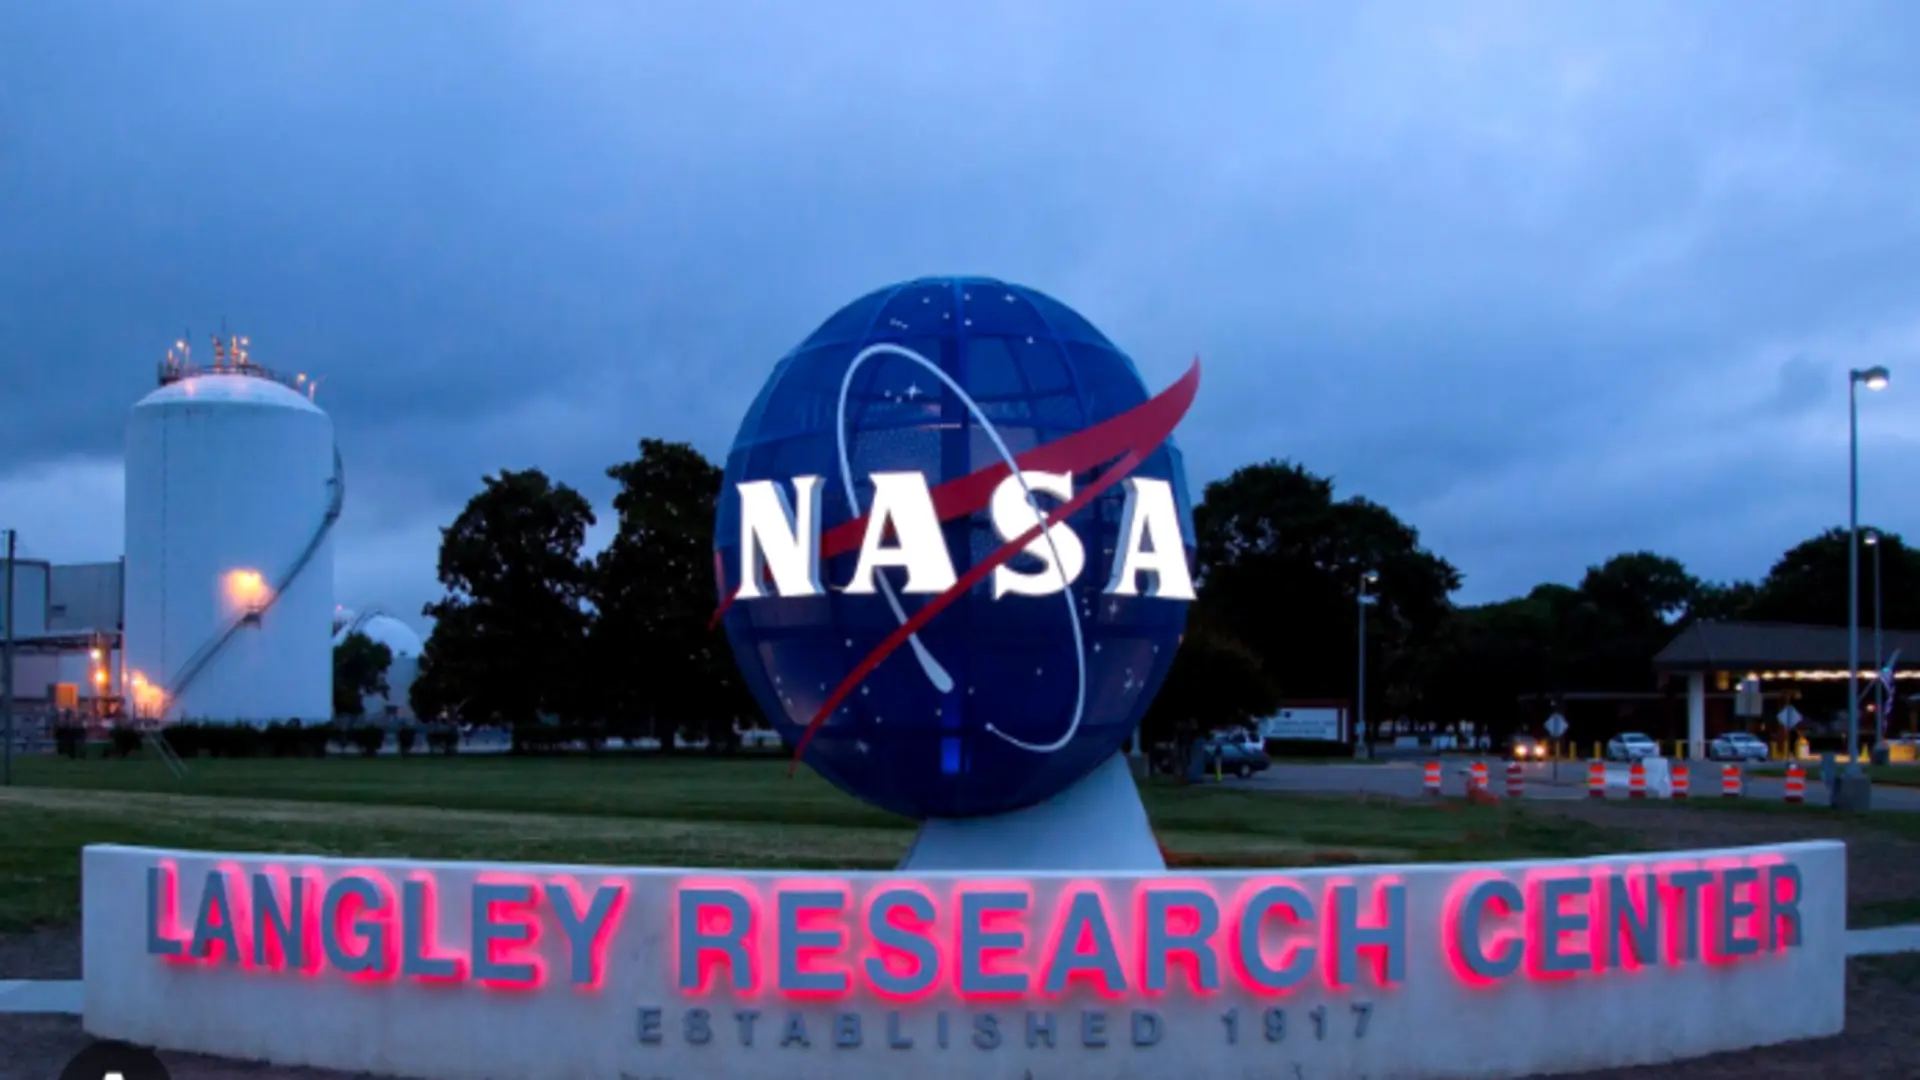 NASA Langley Research Center